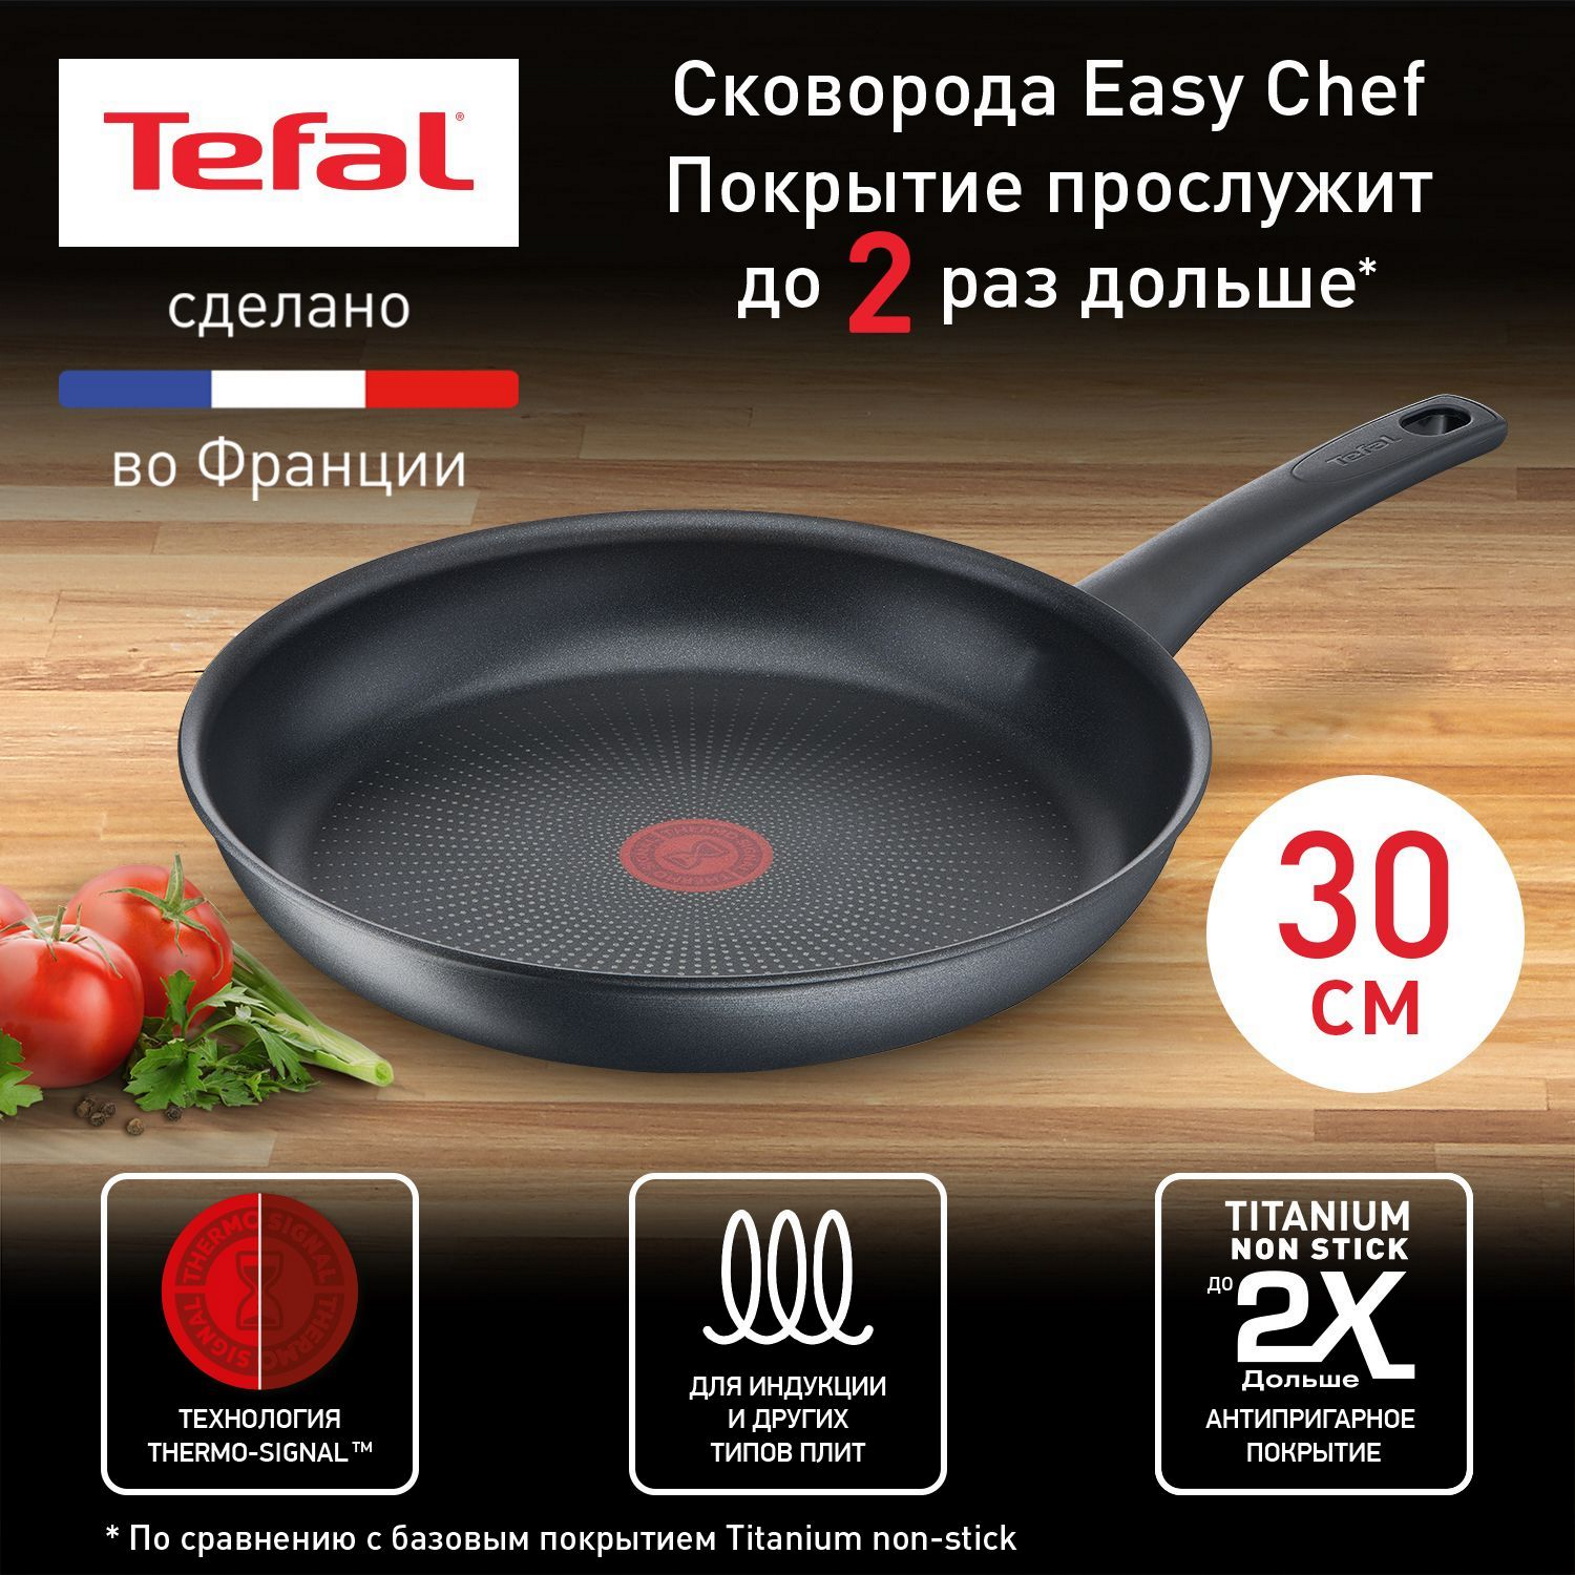 Сковорода Tefal Easy Chef G2700723, 30 см, с индикатором нагрева, антипригарное покрытие